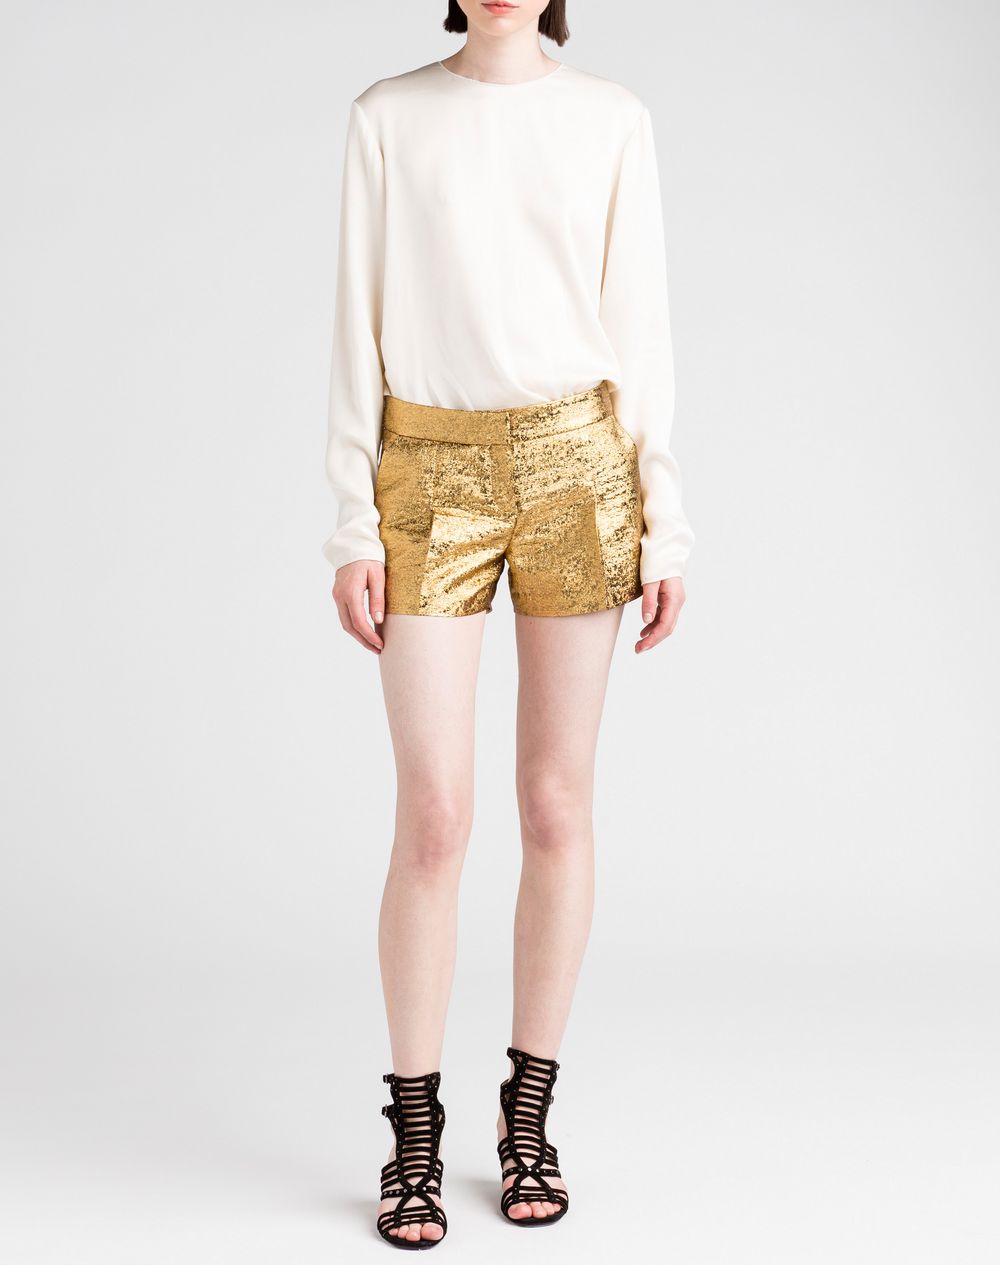 Lanvin Cotton Lamé Shorts, Shorts Women | Lanvin Online Store